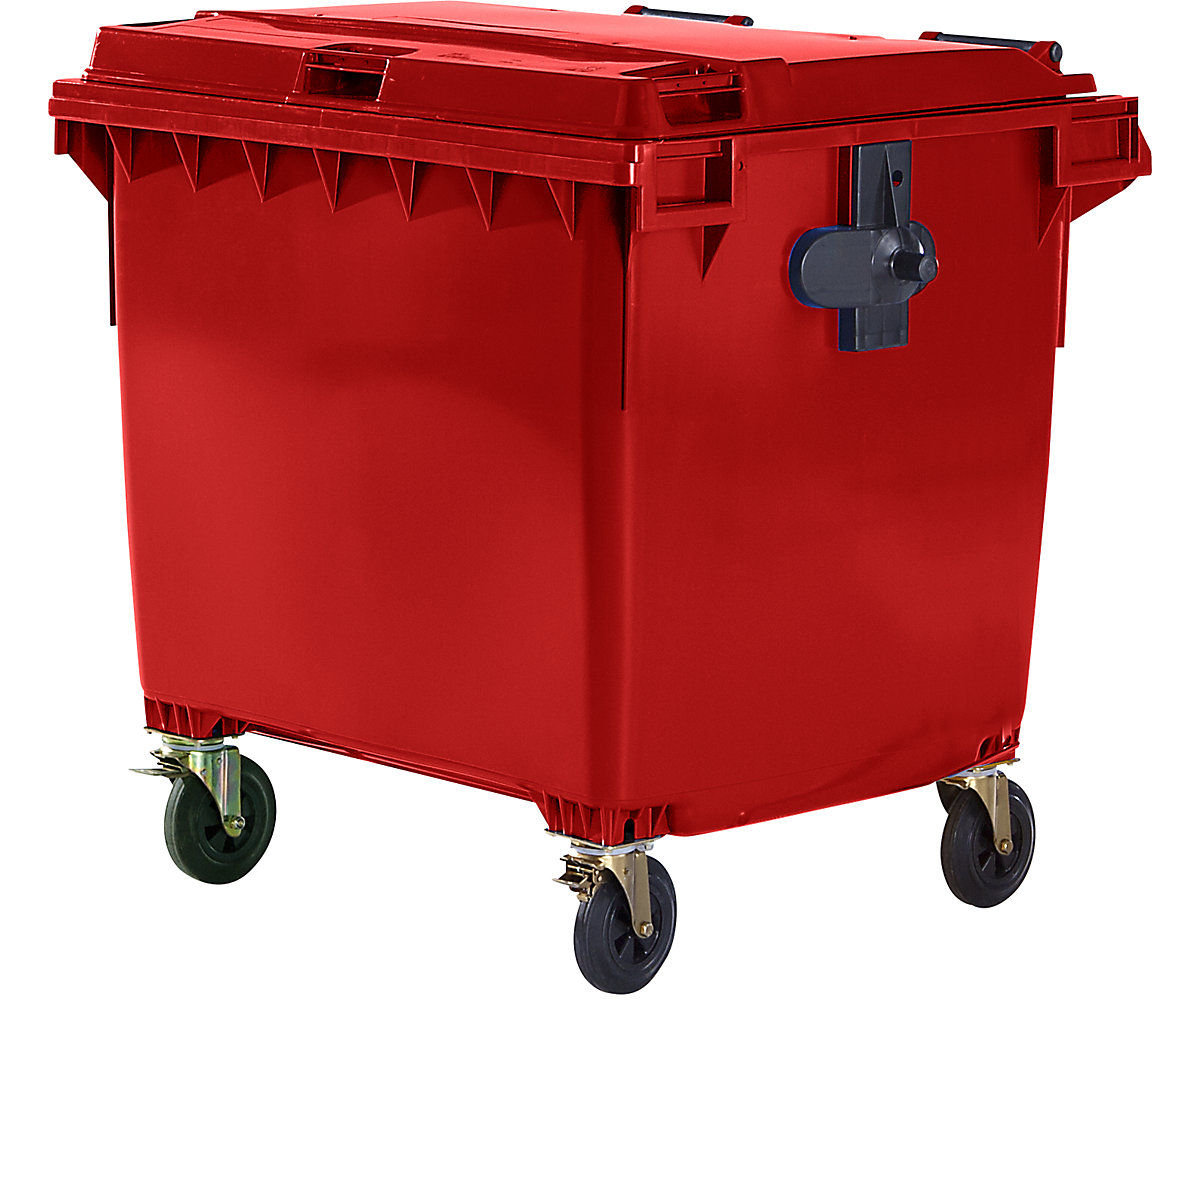 Müllcontainer aus Kunststoff, DIN EN 840, Volumen 1100 l, BxHxT 1370 x 1470 x 1115 mm, rot, ab 5 Stk